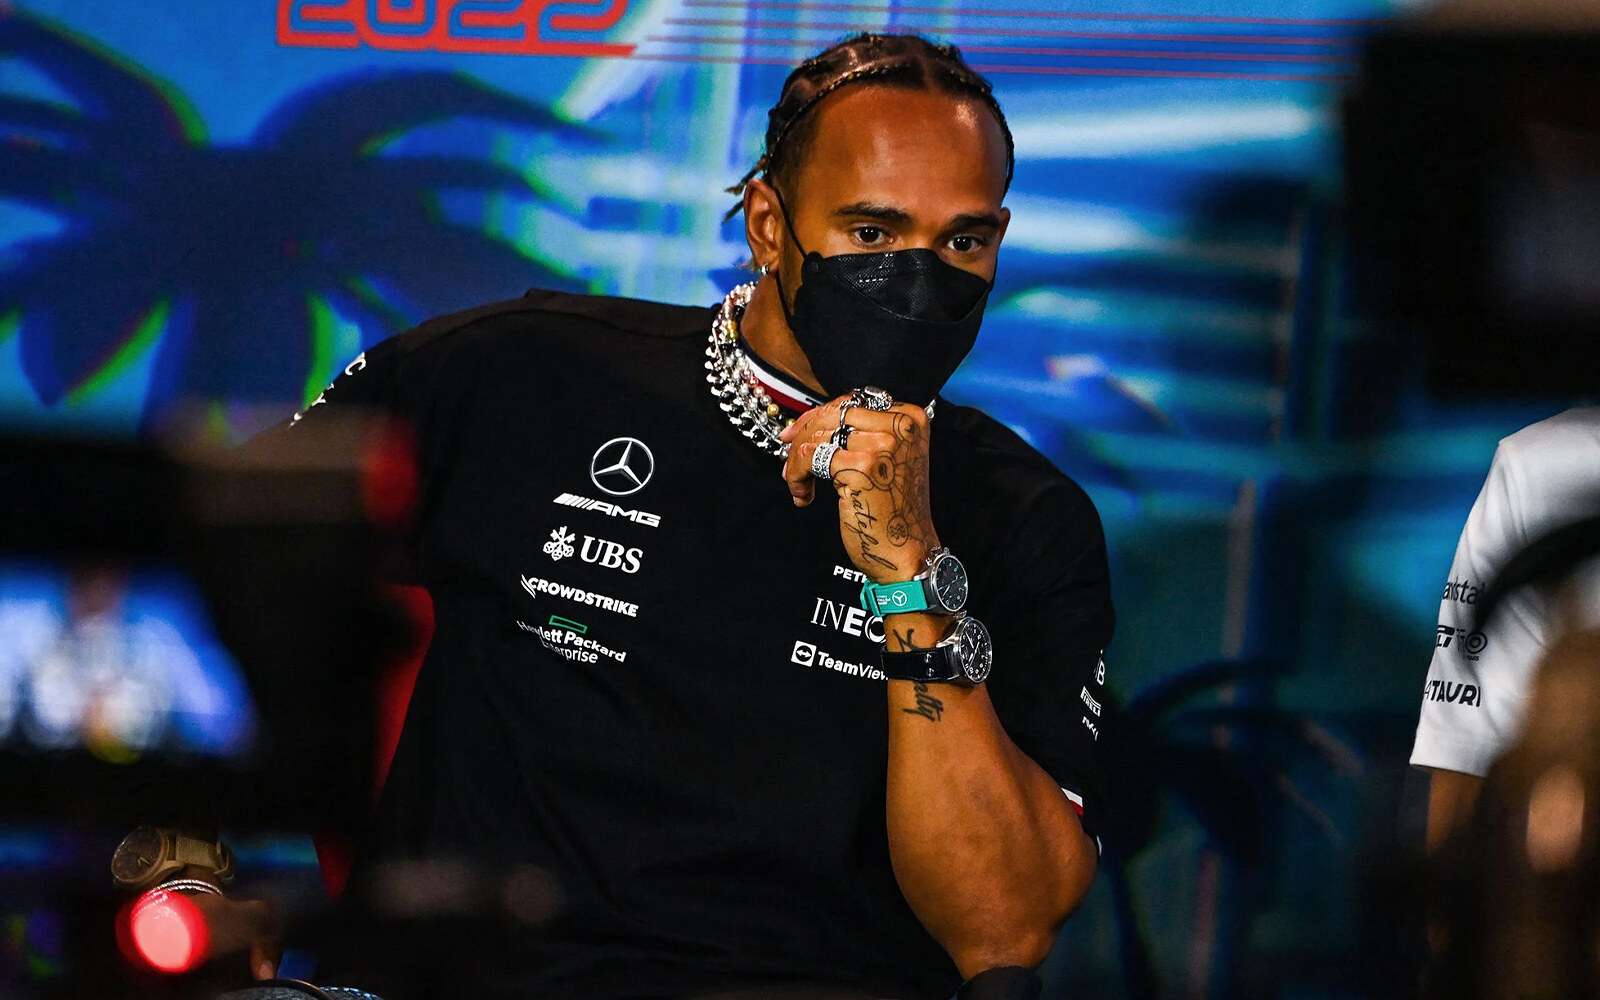 Lewis Hamilton gioielli conferenza gp miami